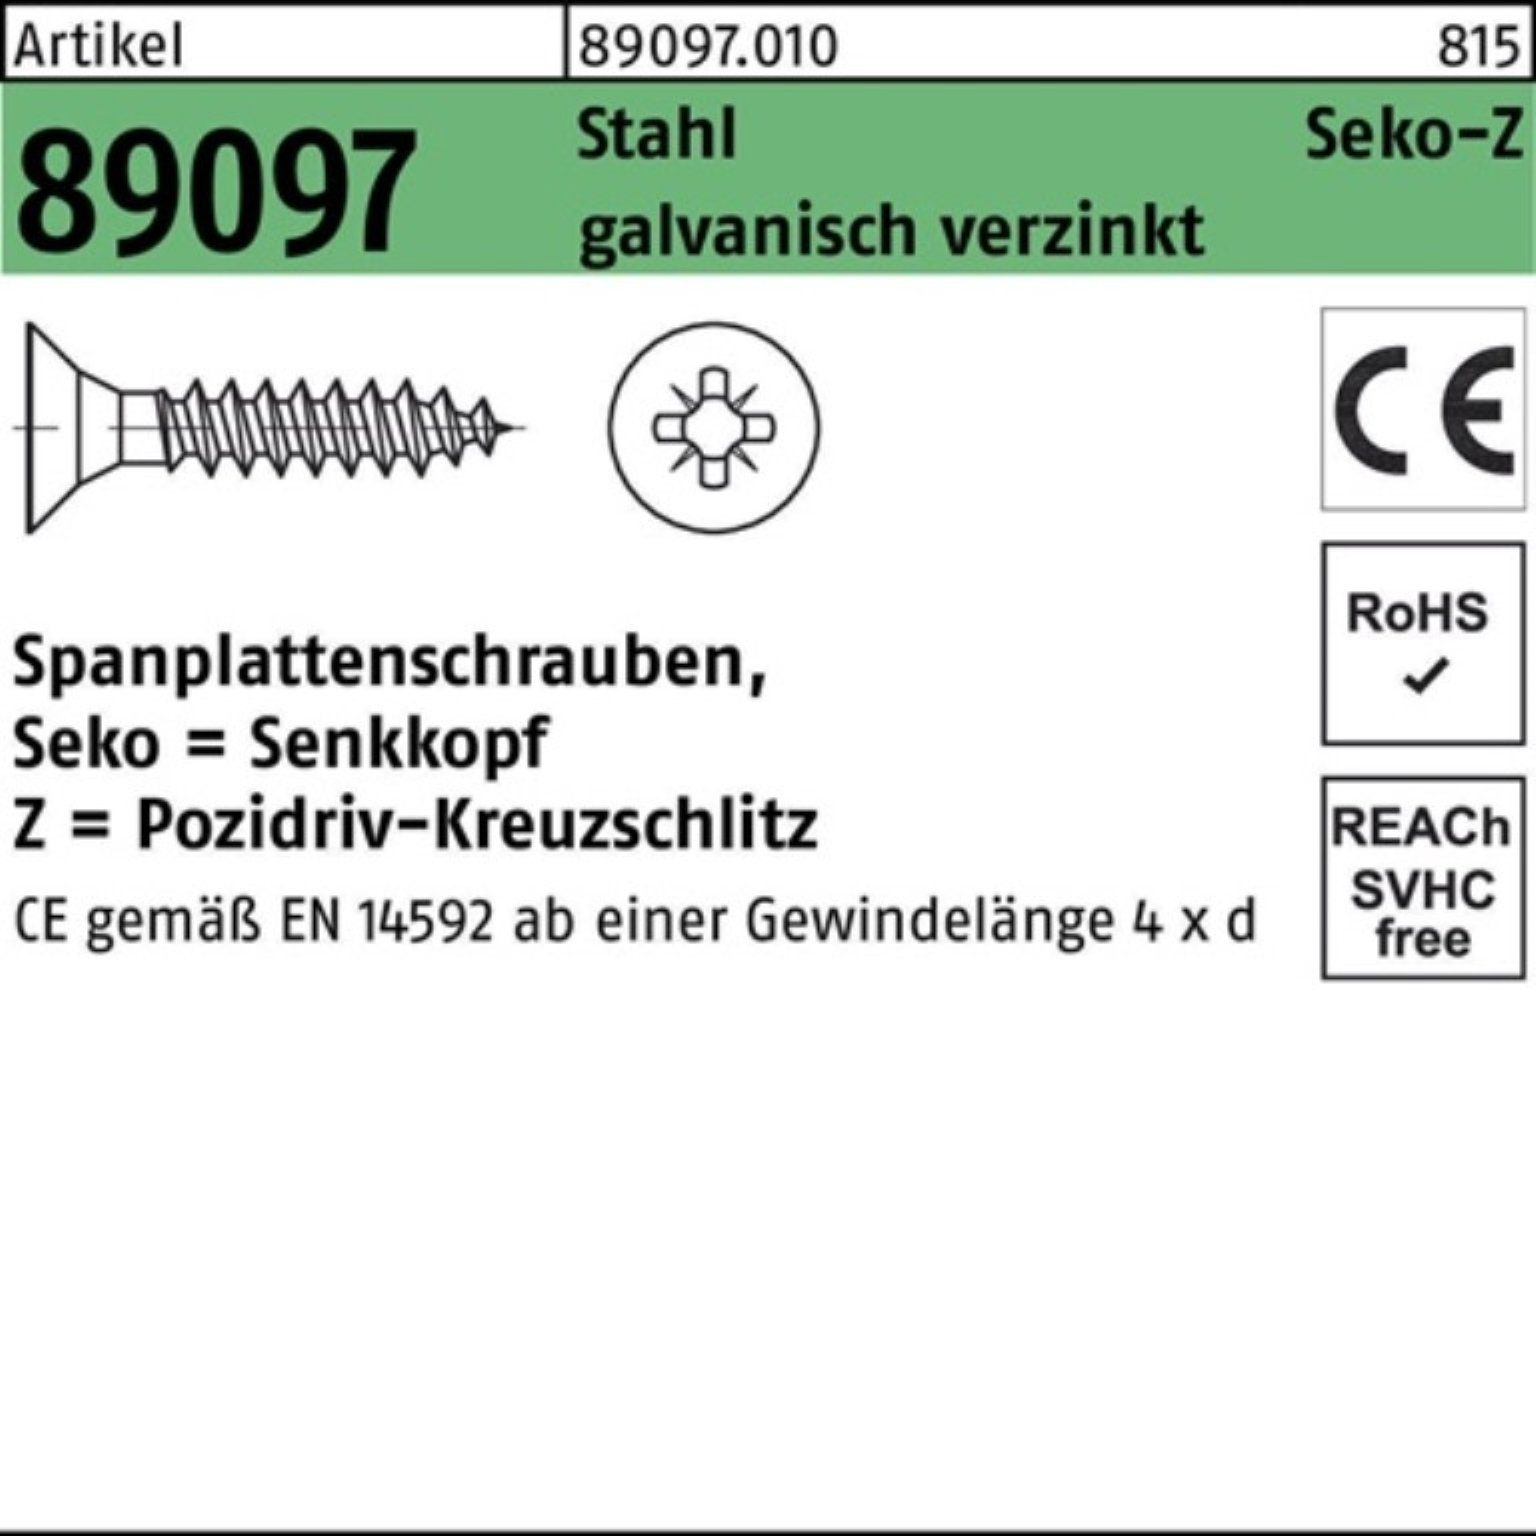 Reyher Spanplattenschraube 1000er Pack Stahl SEKO galv 89097 PZ VG Spanplattenschraube R 4,5x16-Z